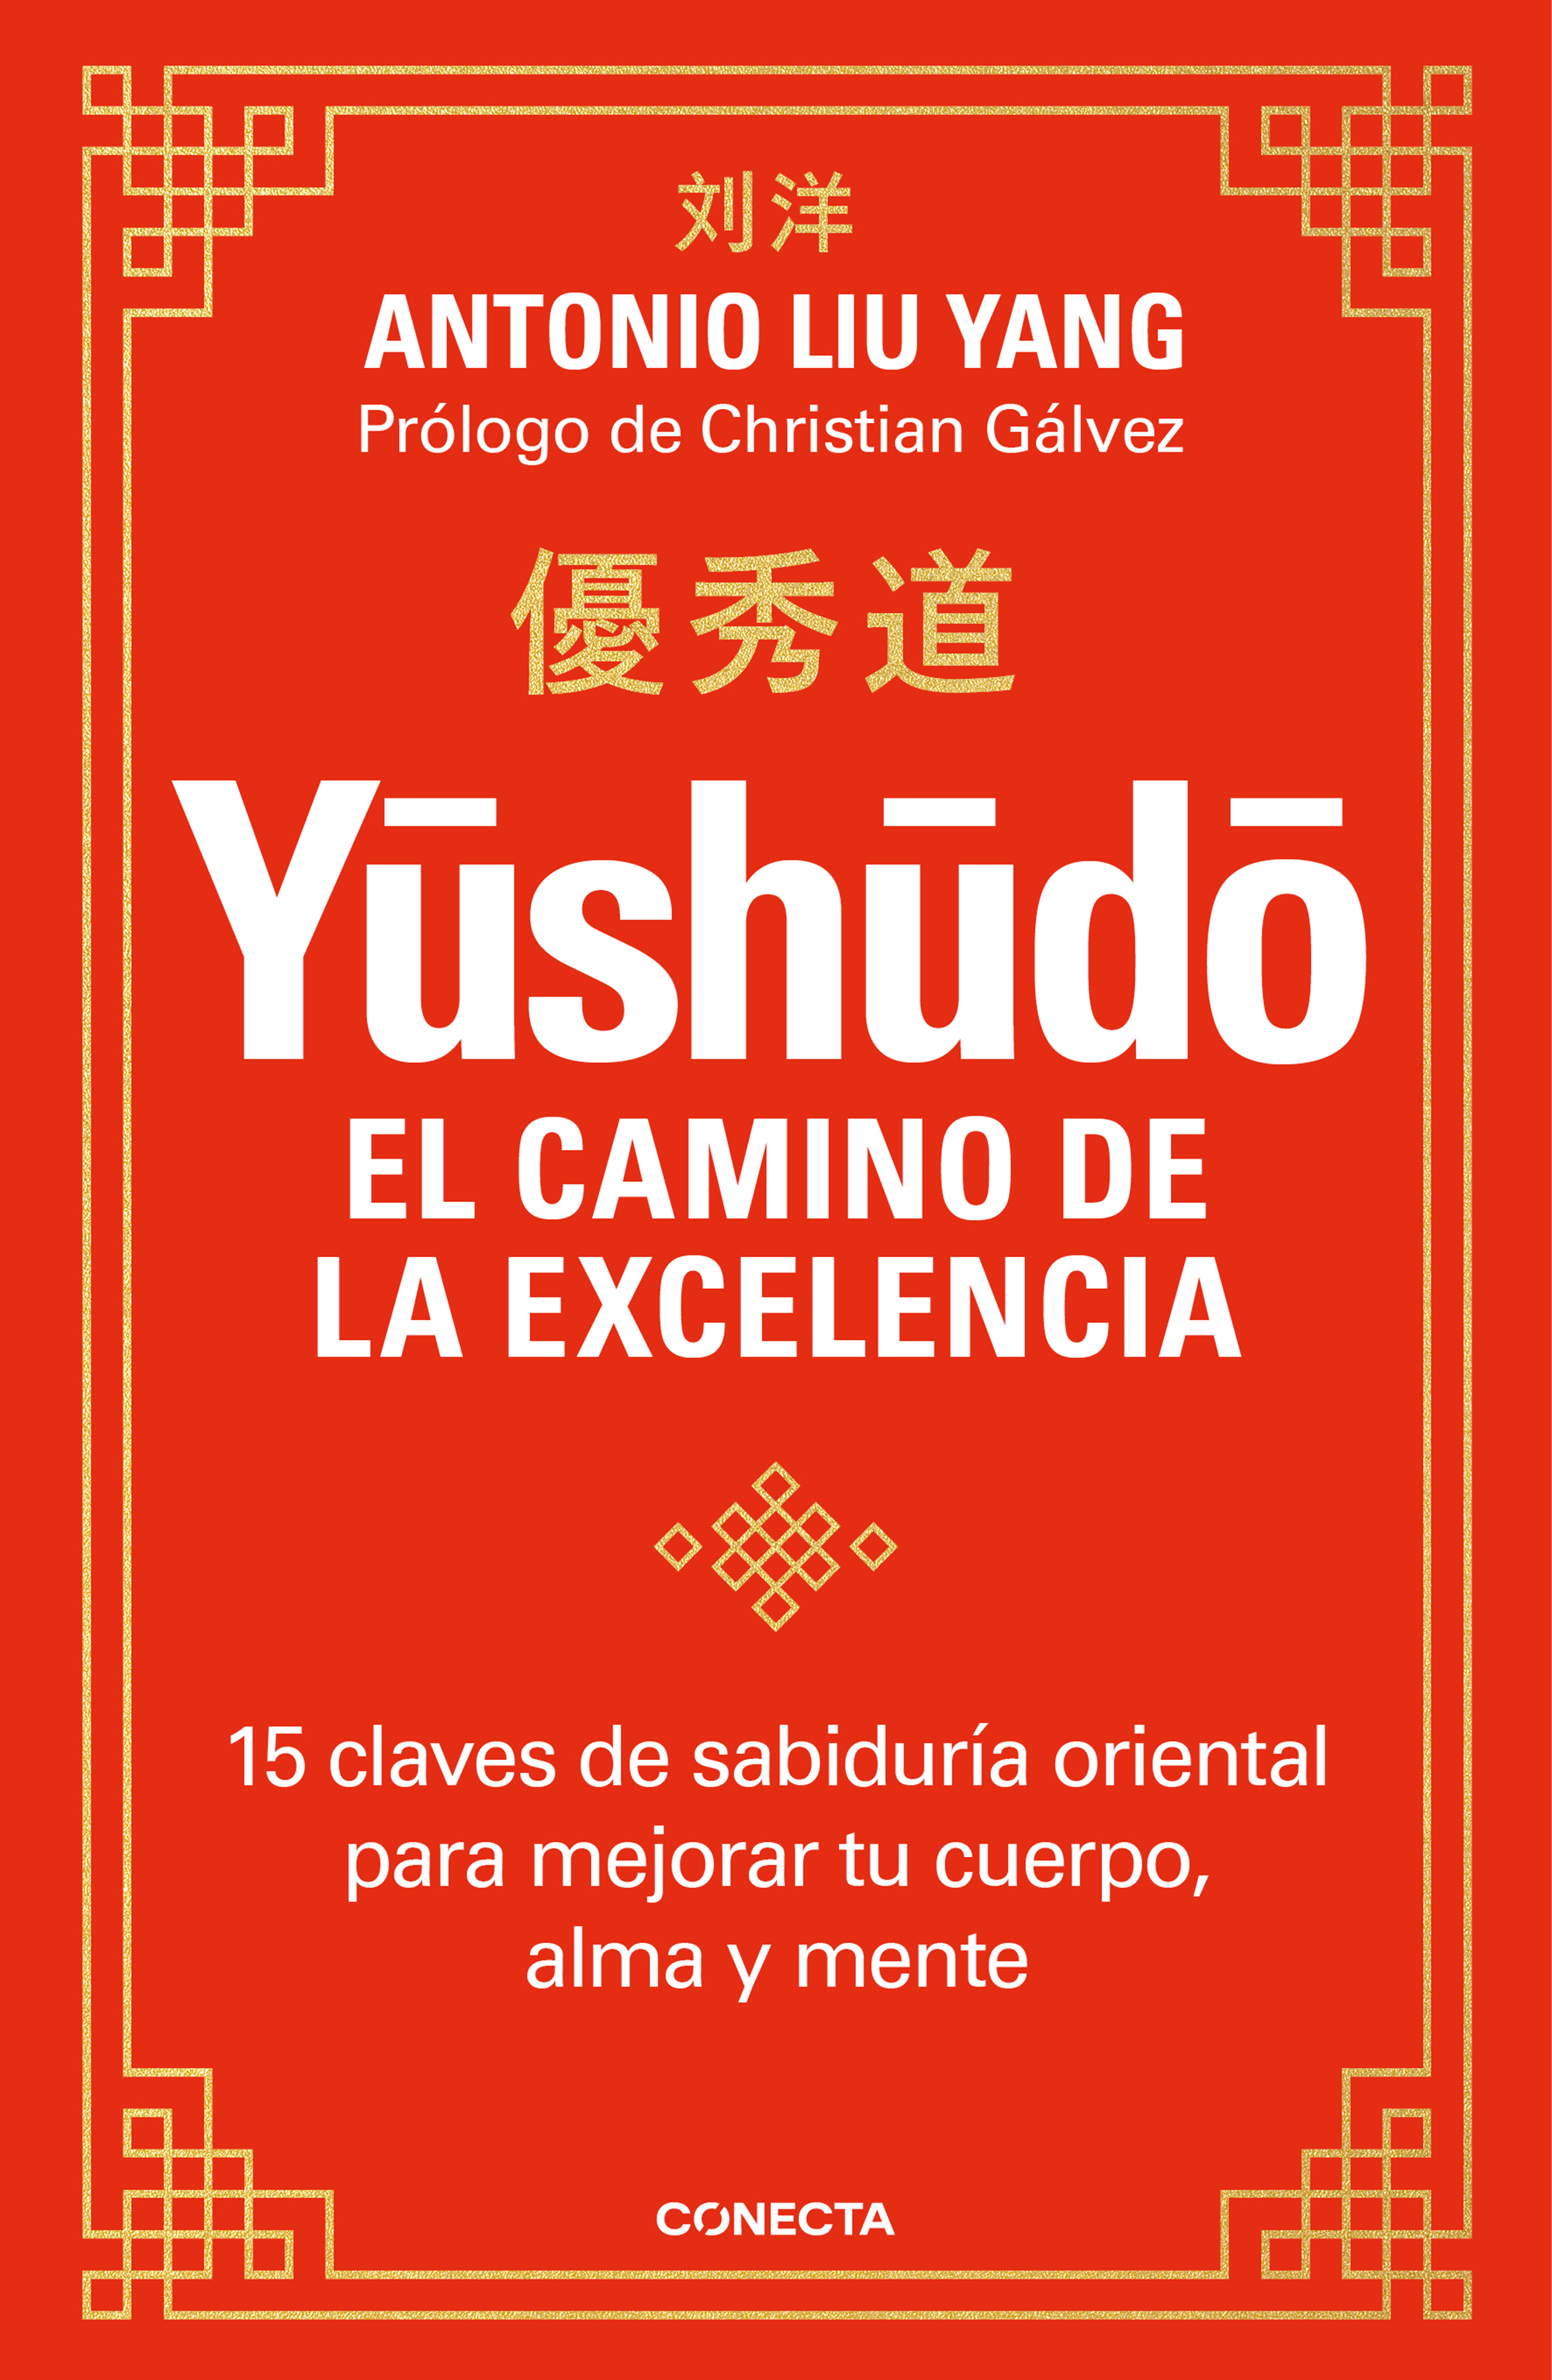 Yushudo: el camino de la excelencia 